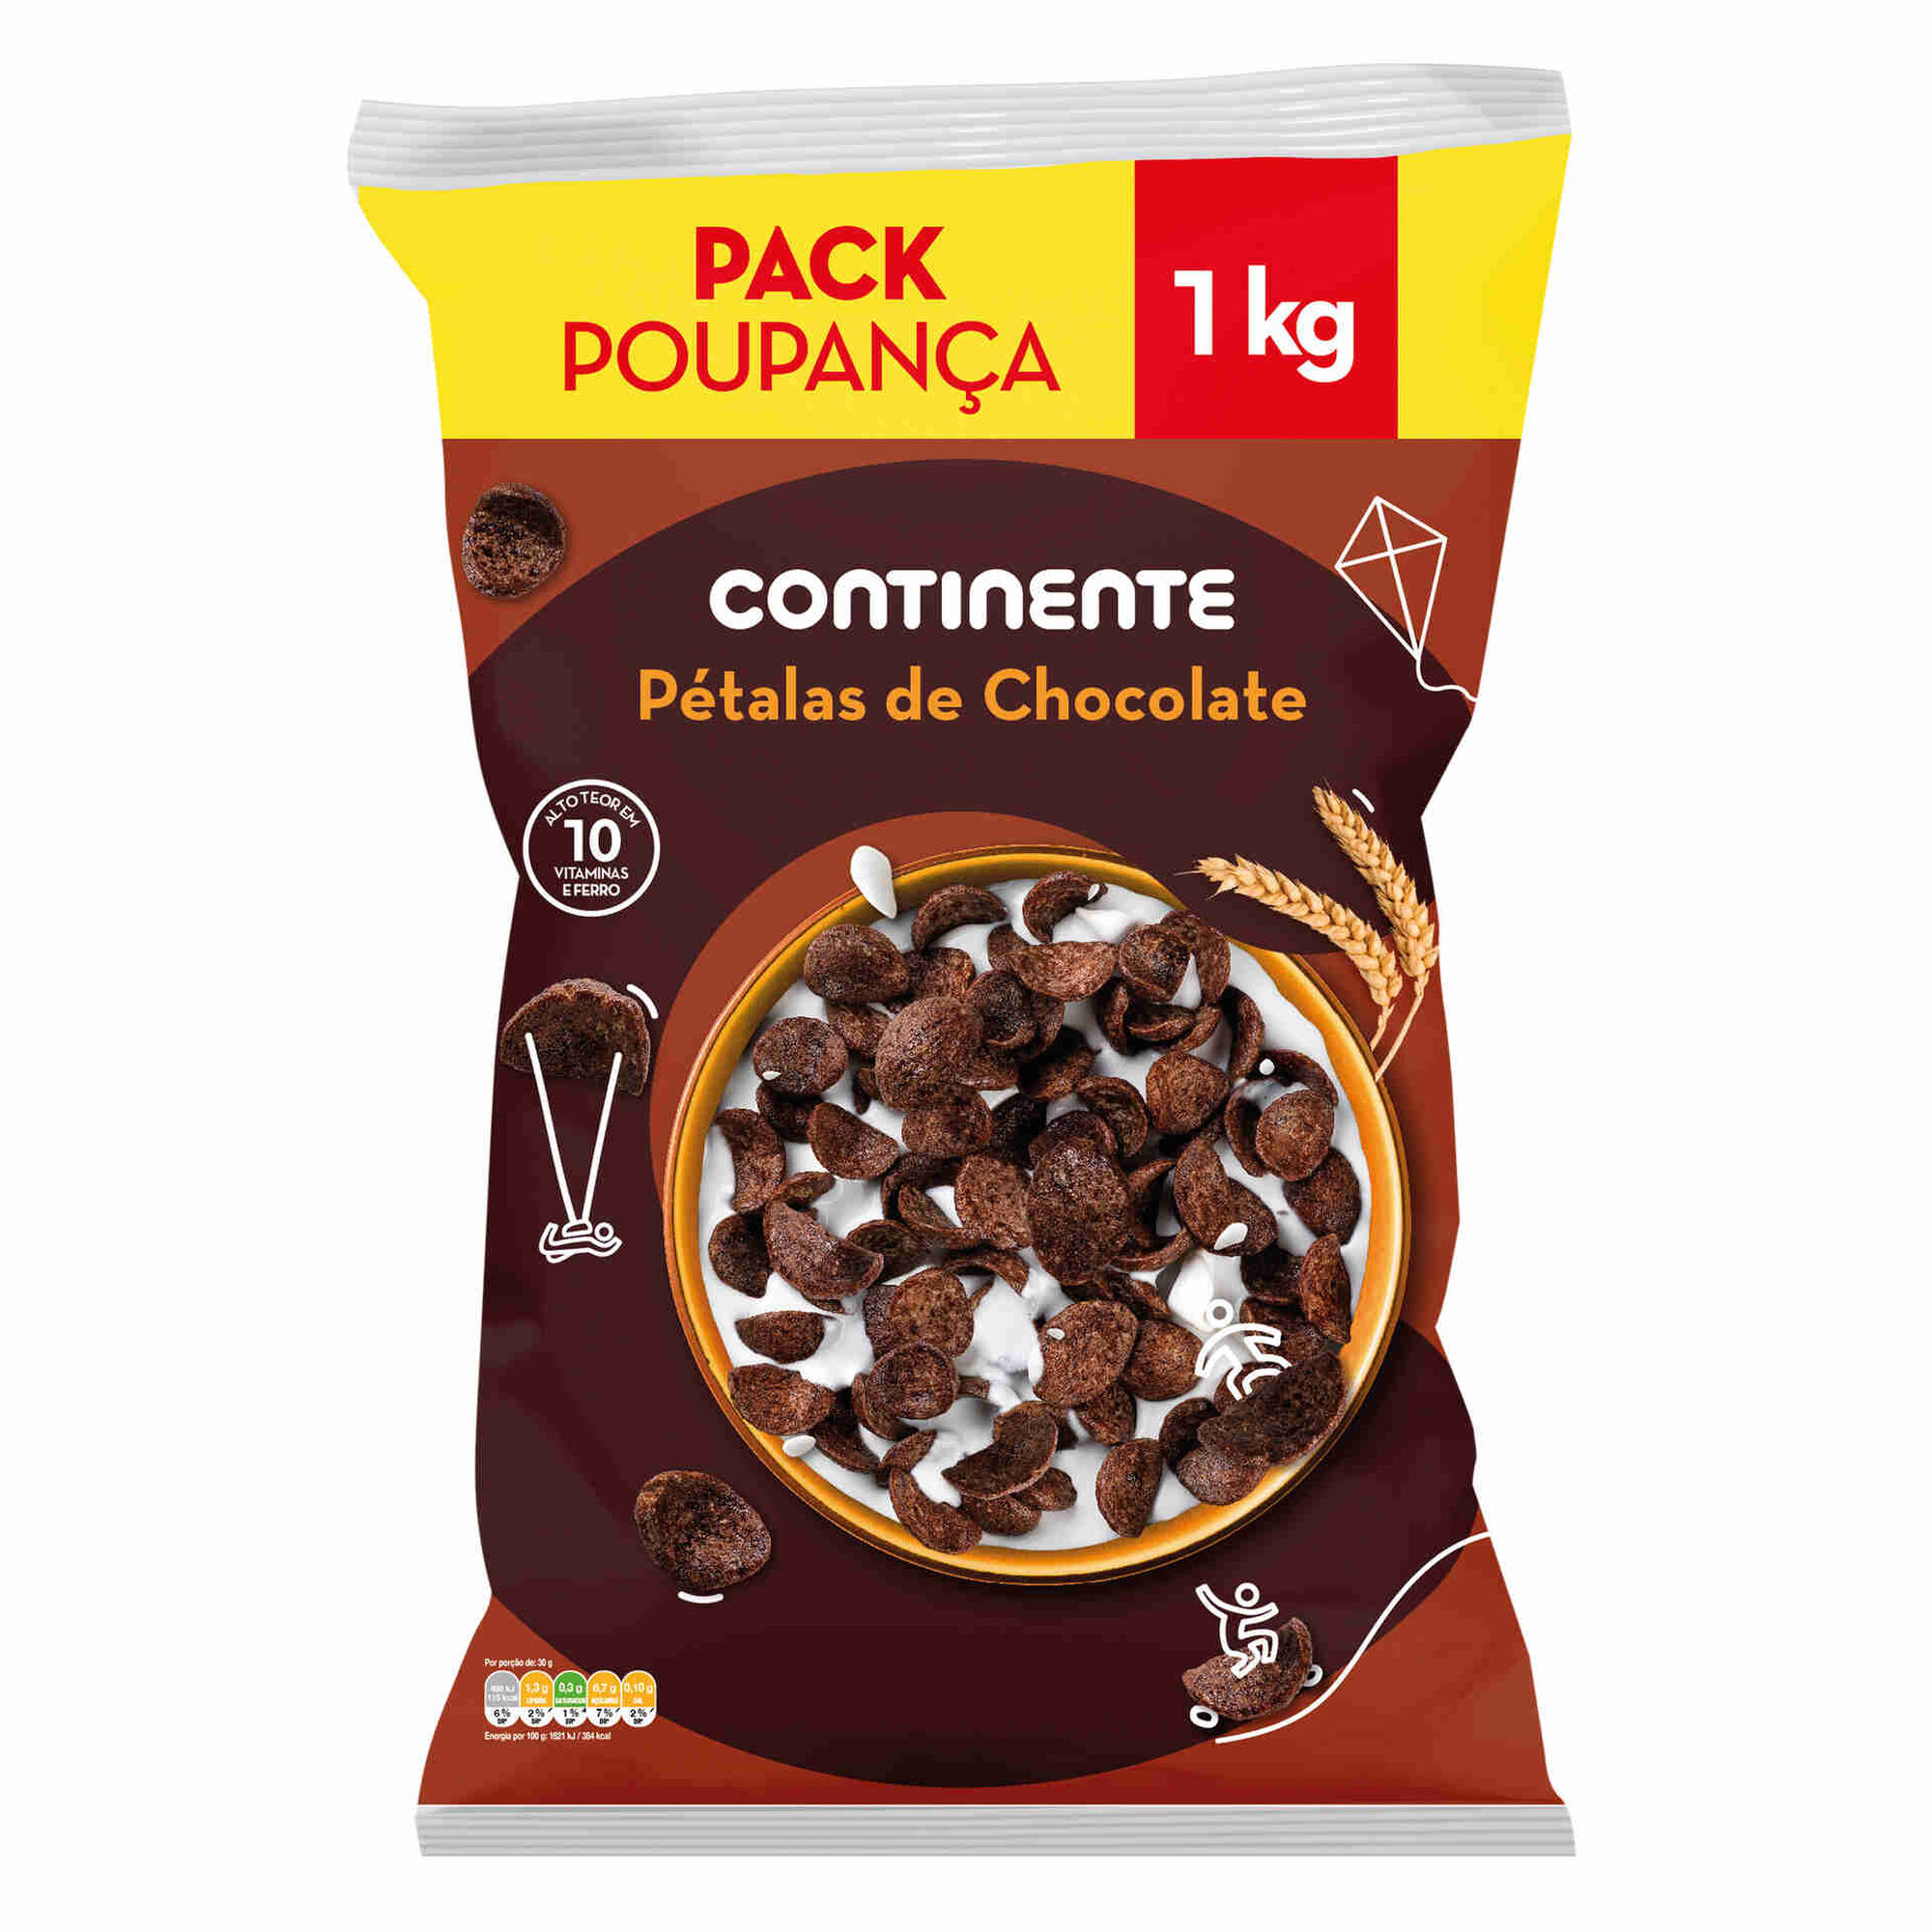 Cereais Pétalas de Chocolate Pack Poupança